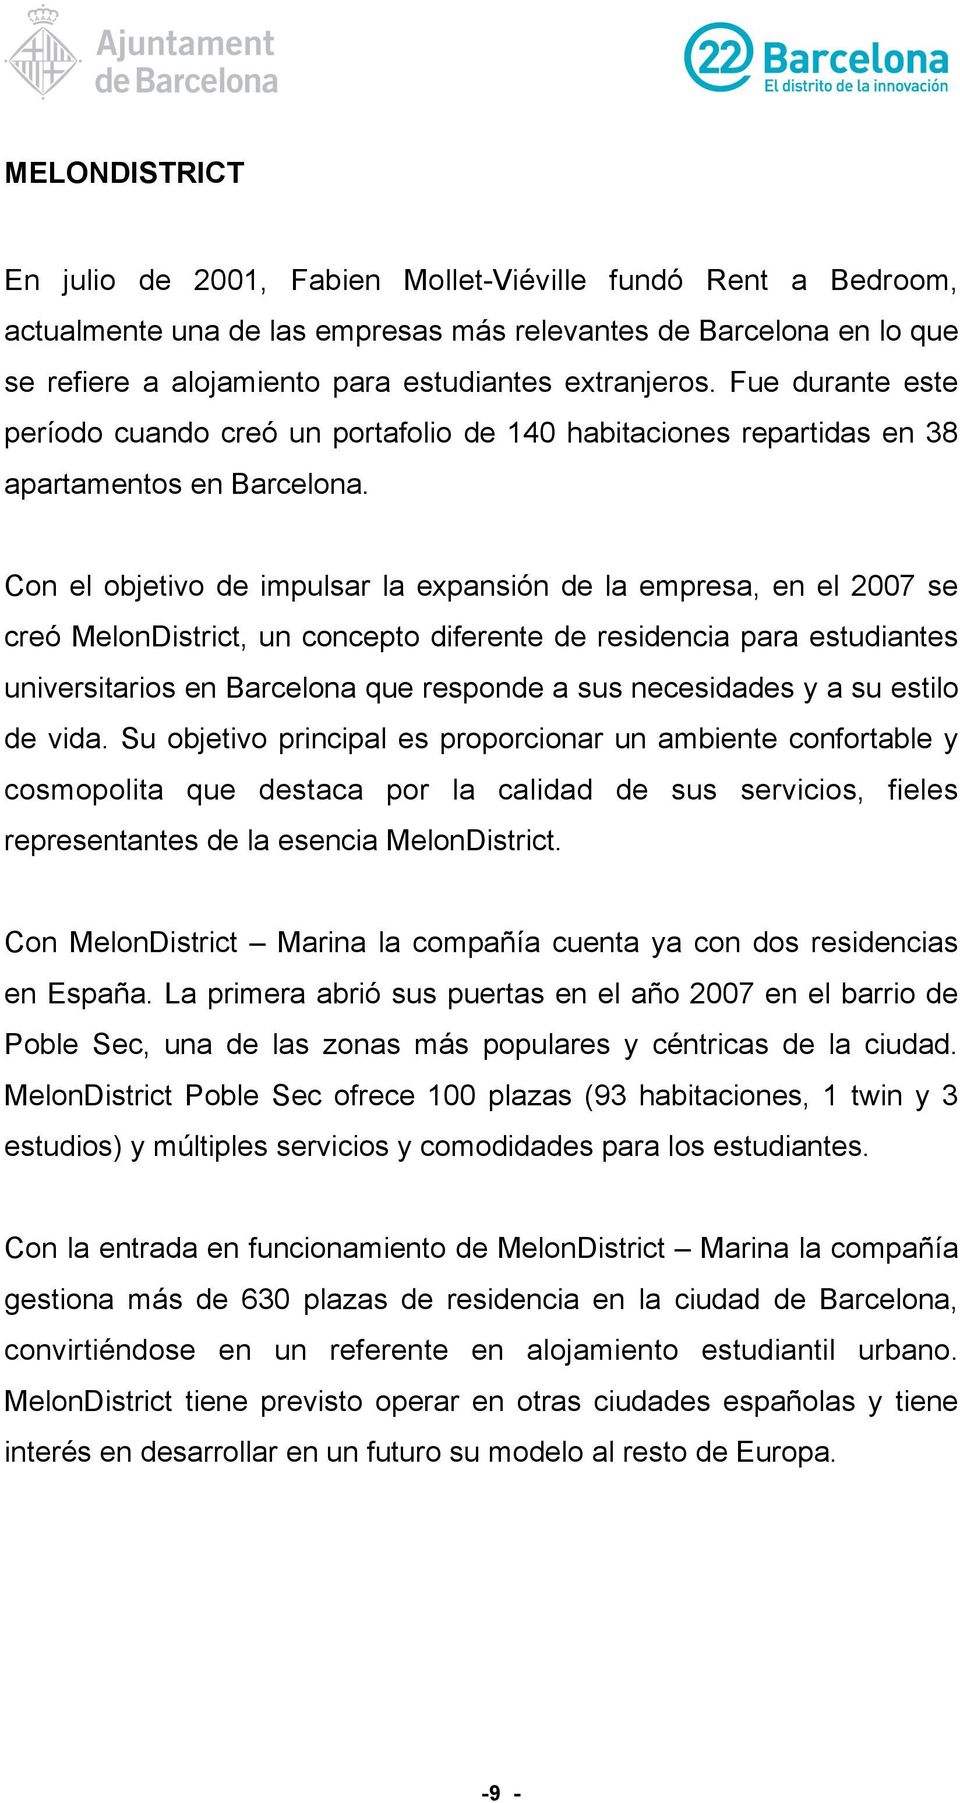 Con el objetivo de impulsar la expansión de la empresa, en el 2007 se creó MelonDistrict, un concepto diferente de residencia para estudiantes universitarios en Barcelona que responde a sus